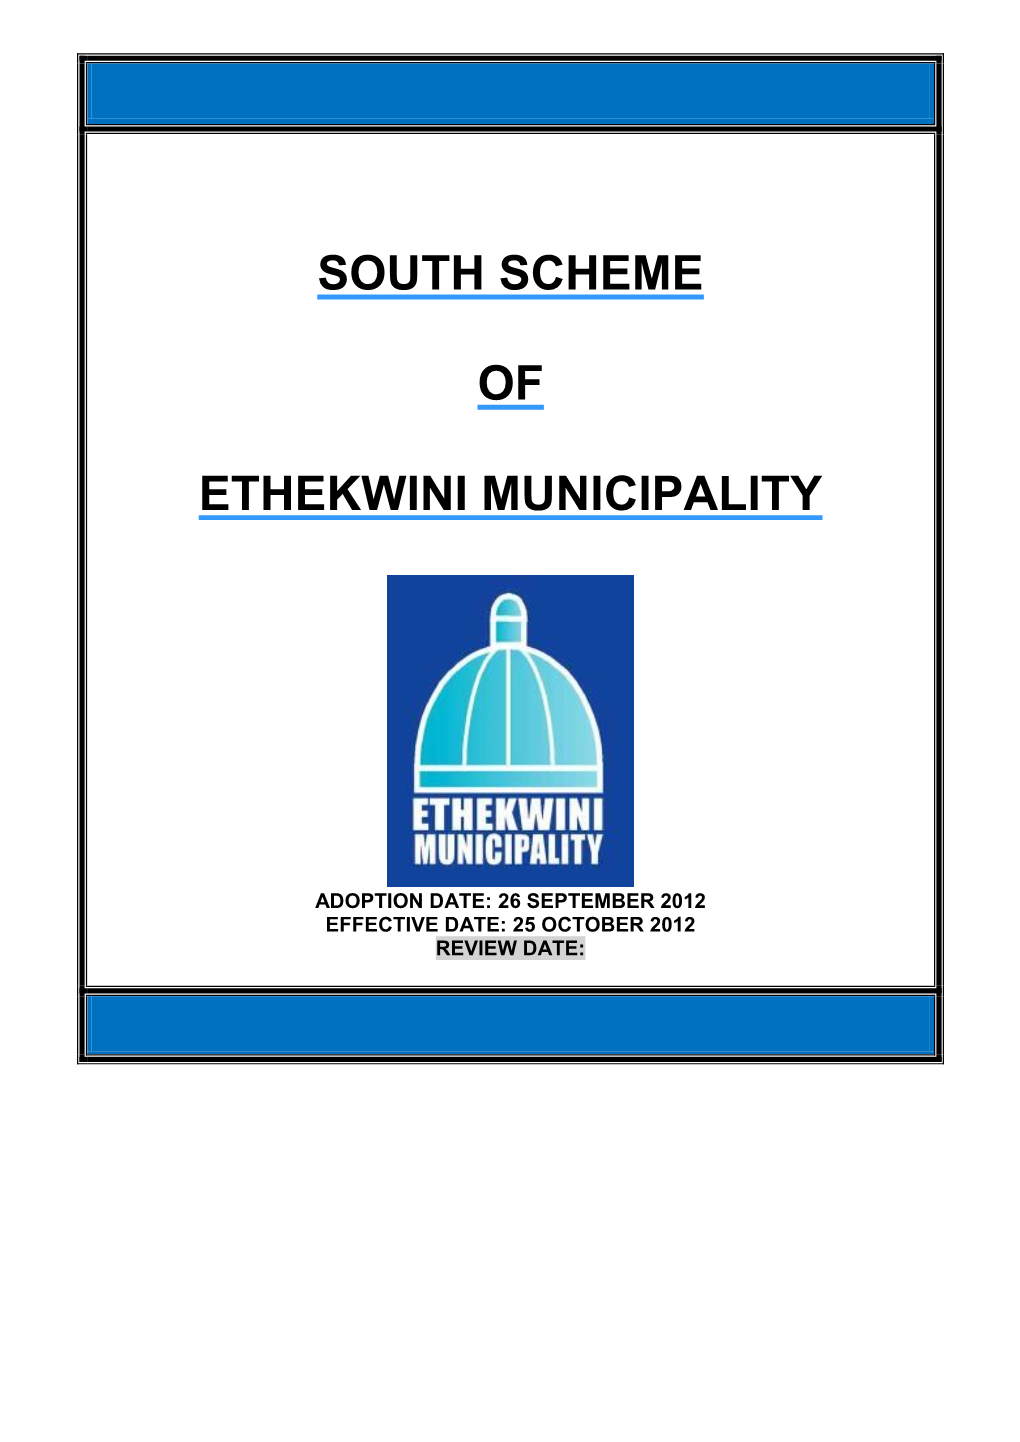 South Scheme of Ethekwini Municipality